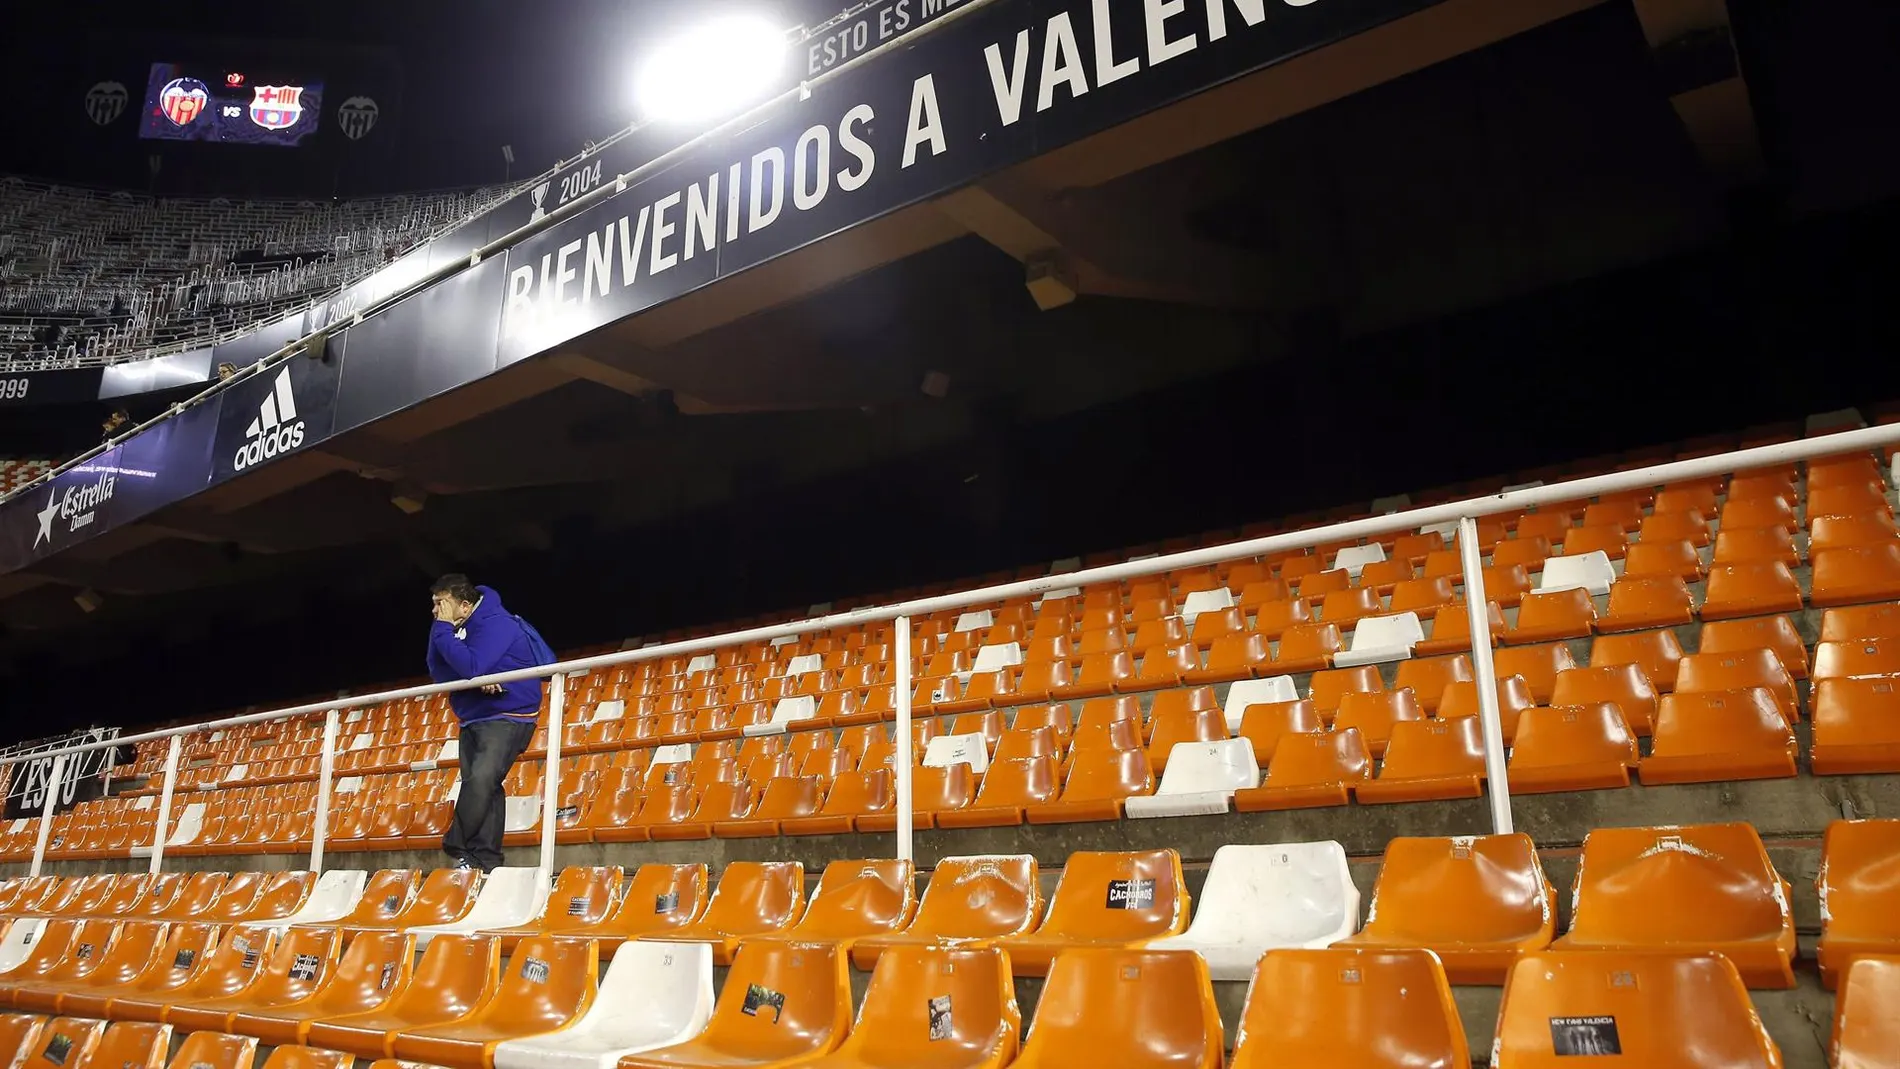  Mestalla ya se prepara para recibir a 5.000 aficionados en la vuelta del público a varios estadios de la Liga